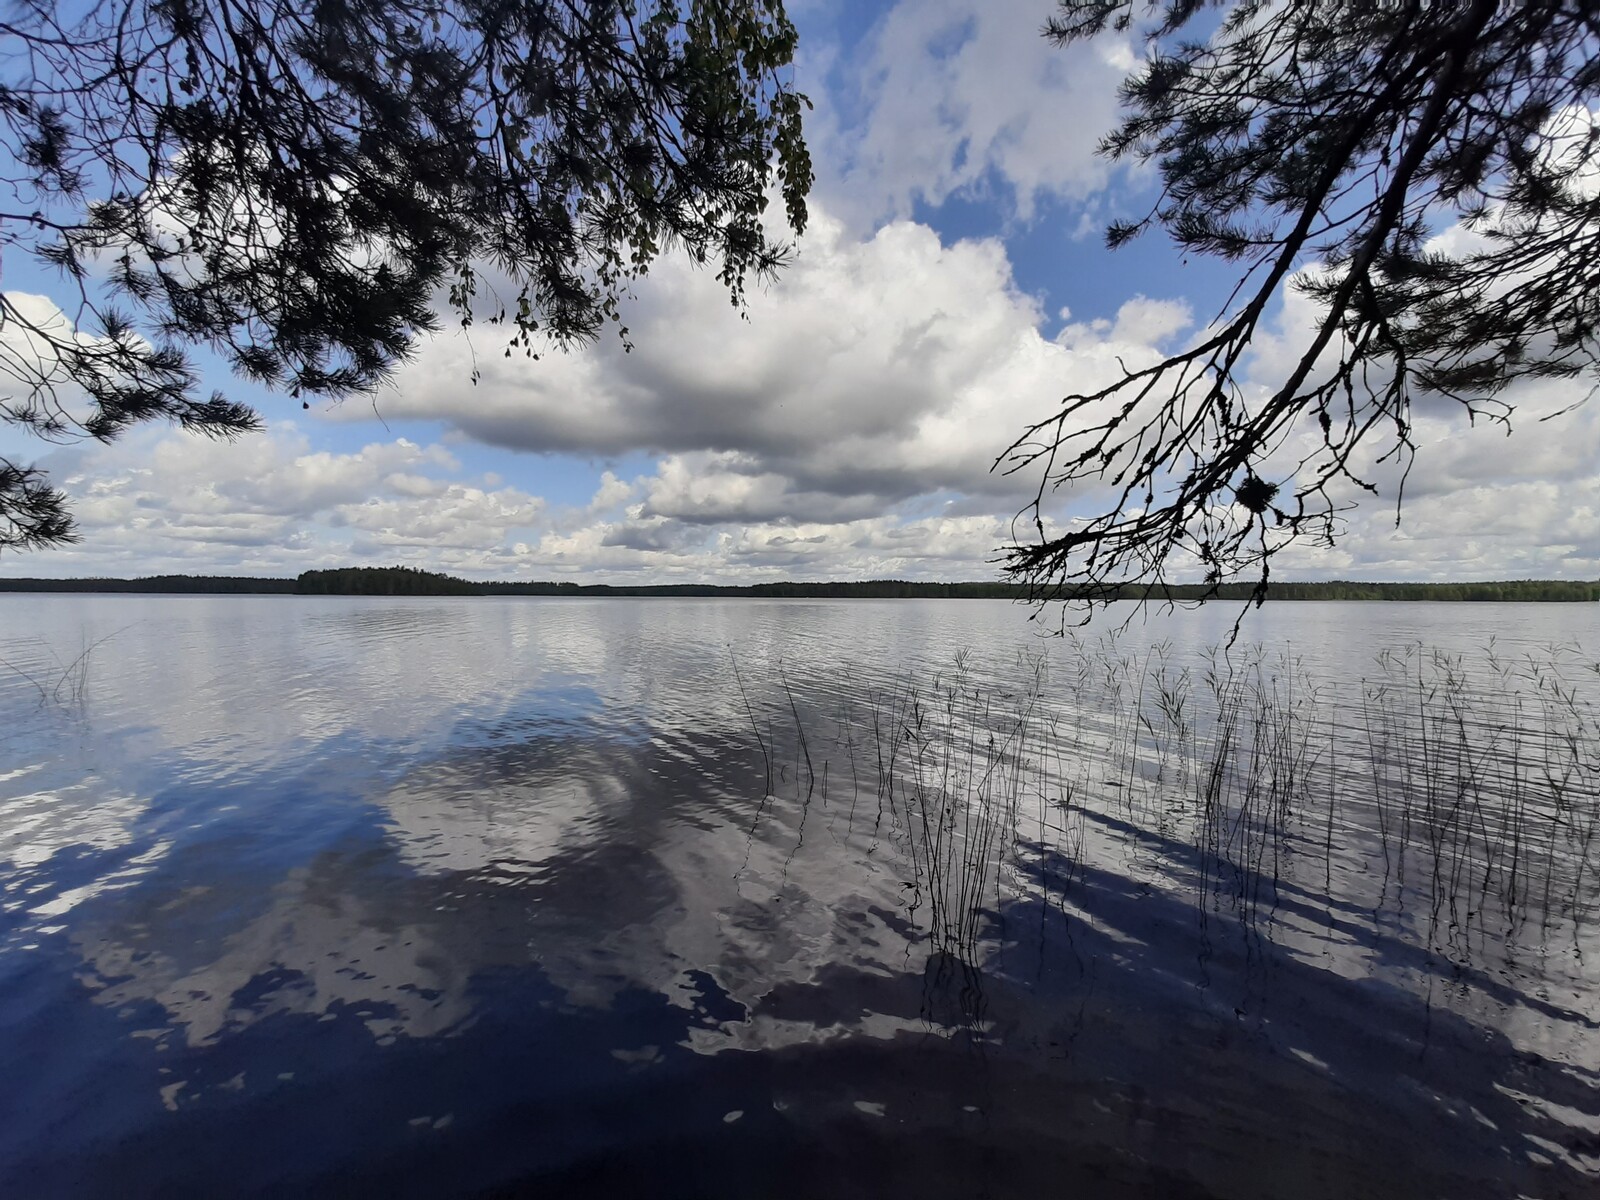 Kesämaisemassa puiden oksat kaartuvat järven päälle. Poutapilvinen taivas heijastuu tyyneen veteen.